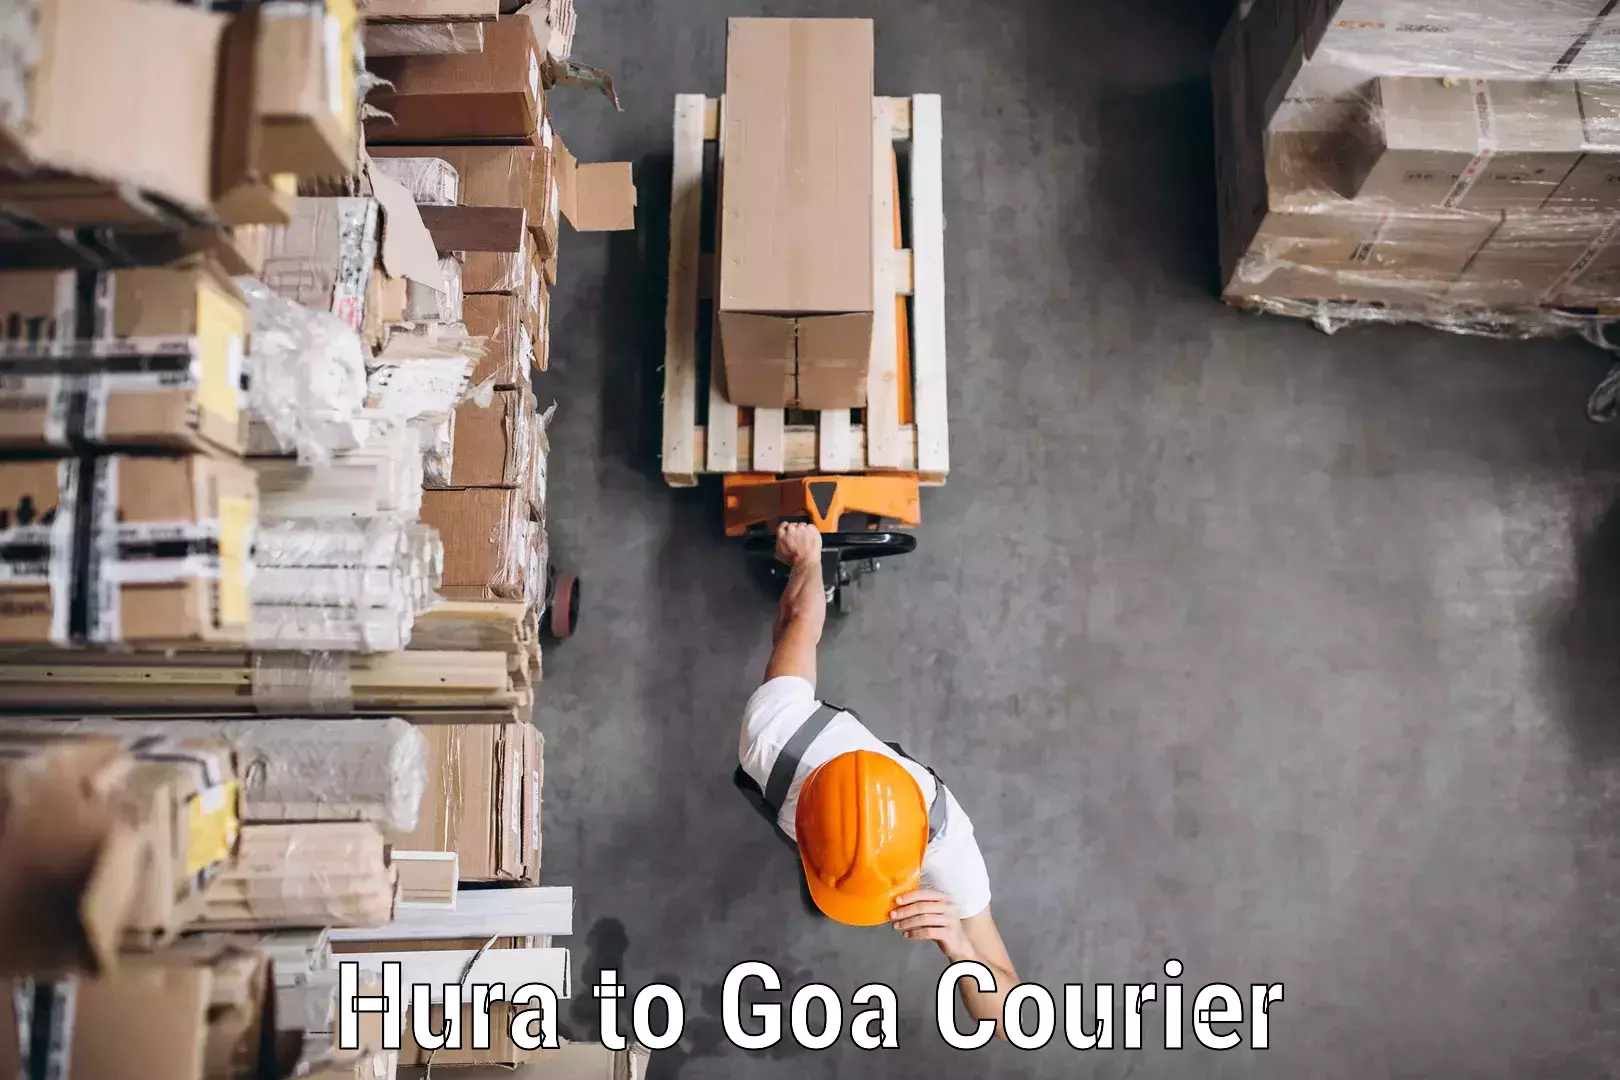 Digital courier platforms Hura to Goa